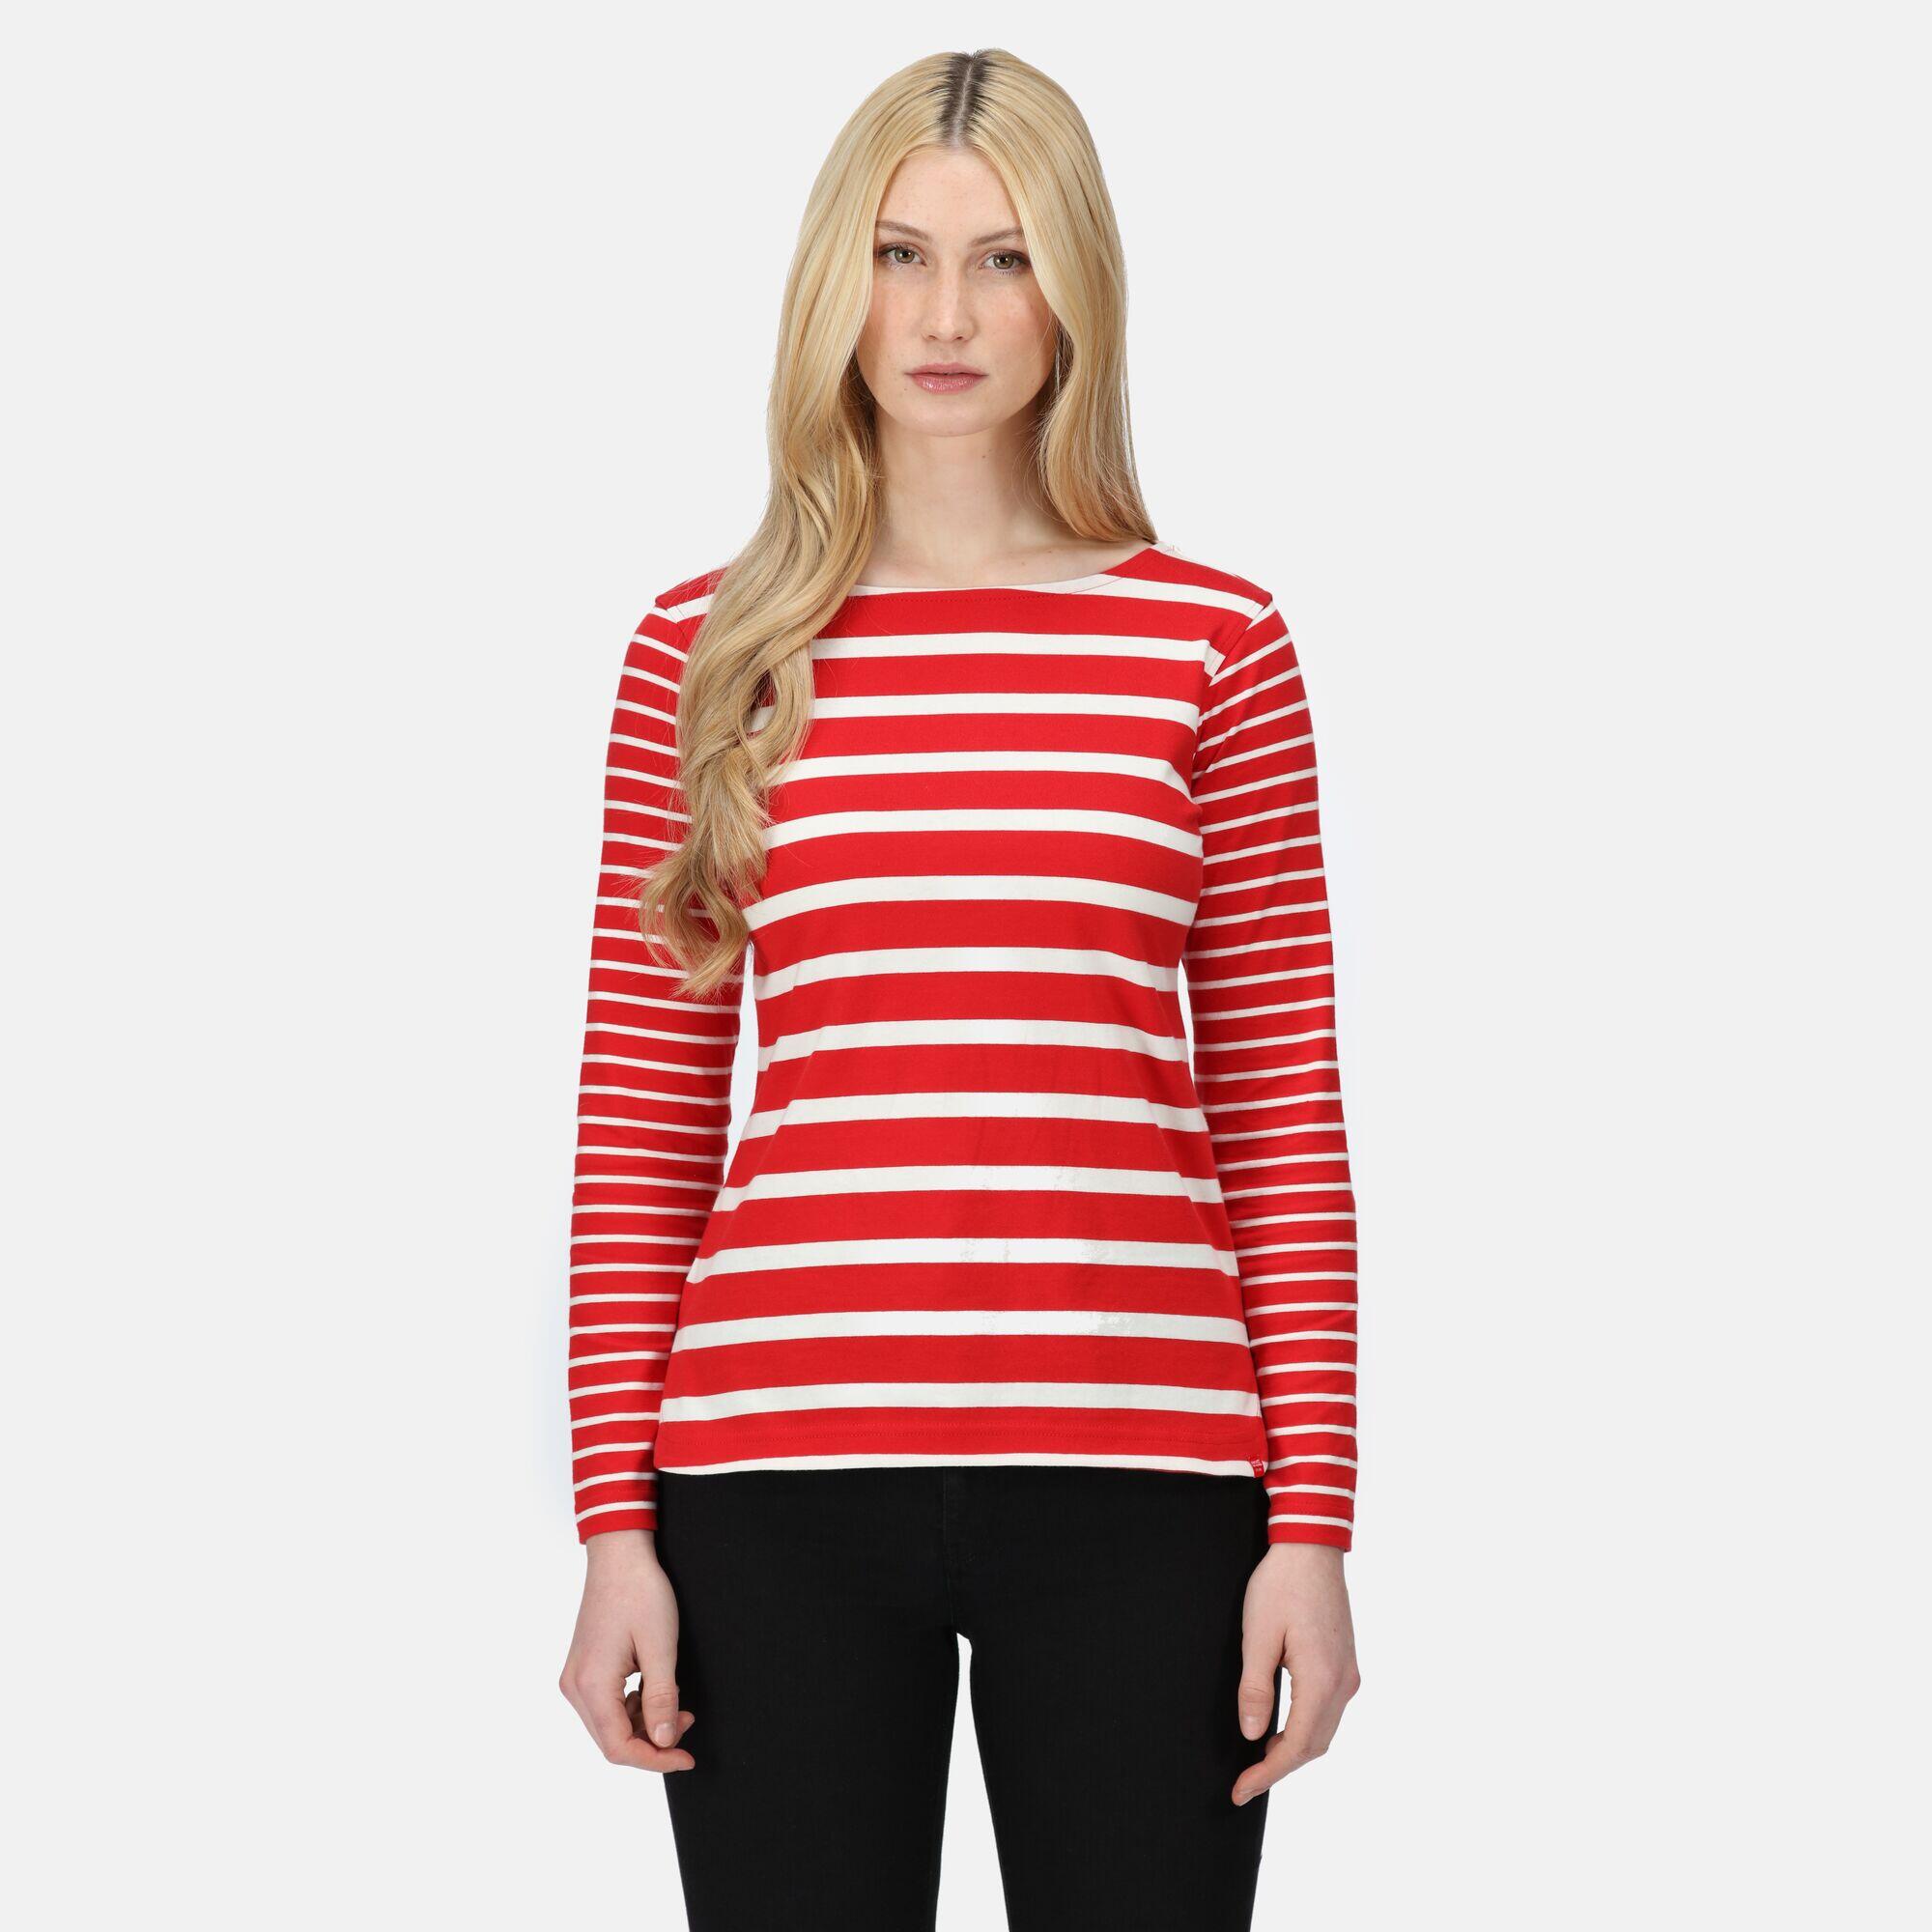 REGATTA Women's Farida Striped T-Shirt